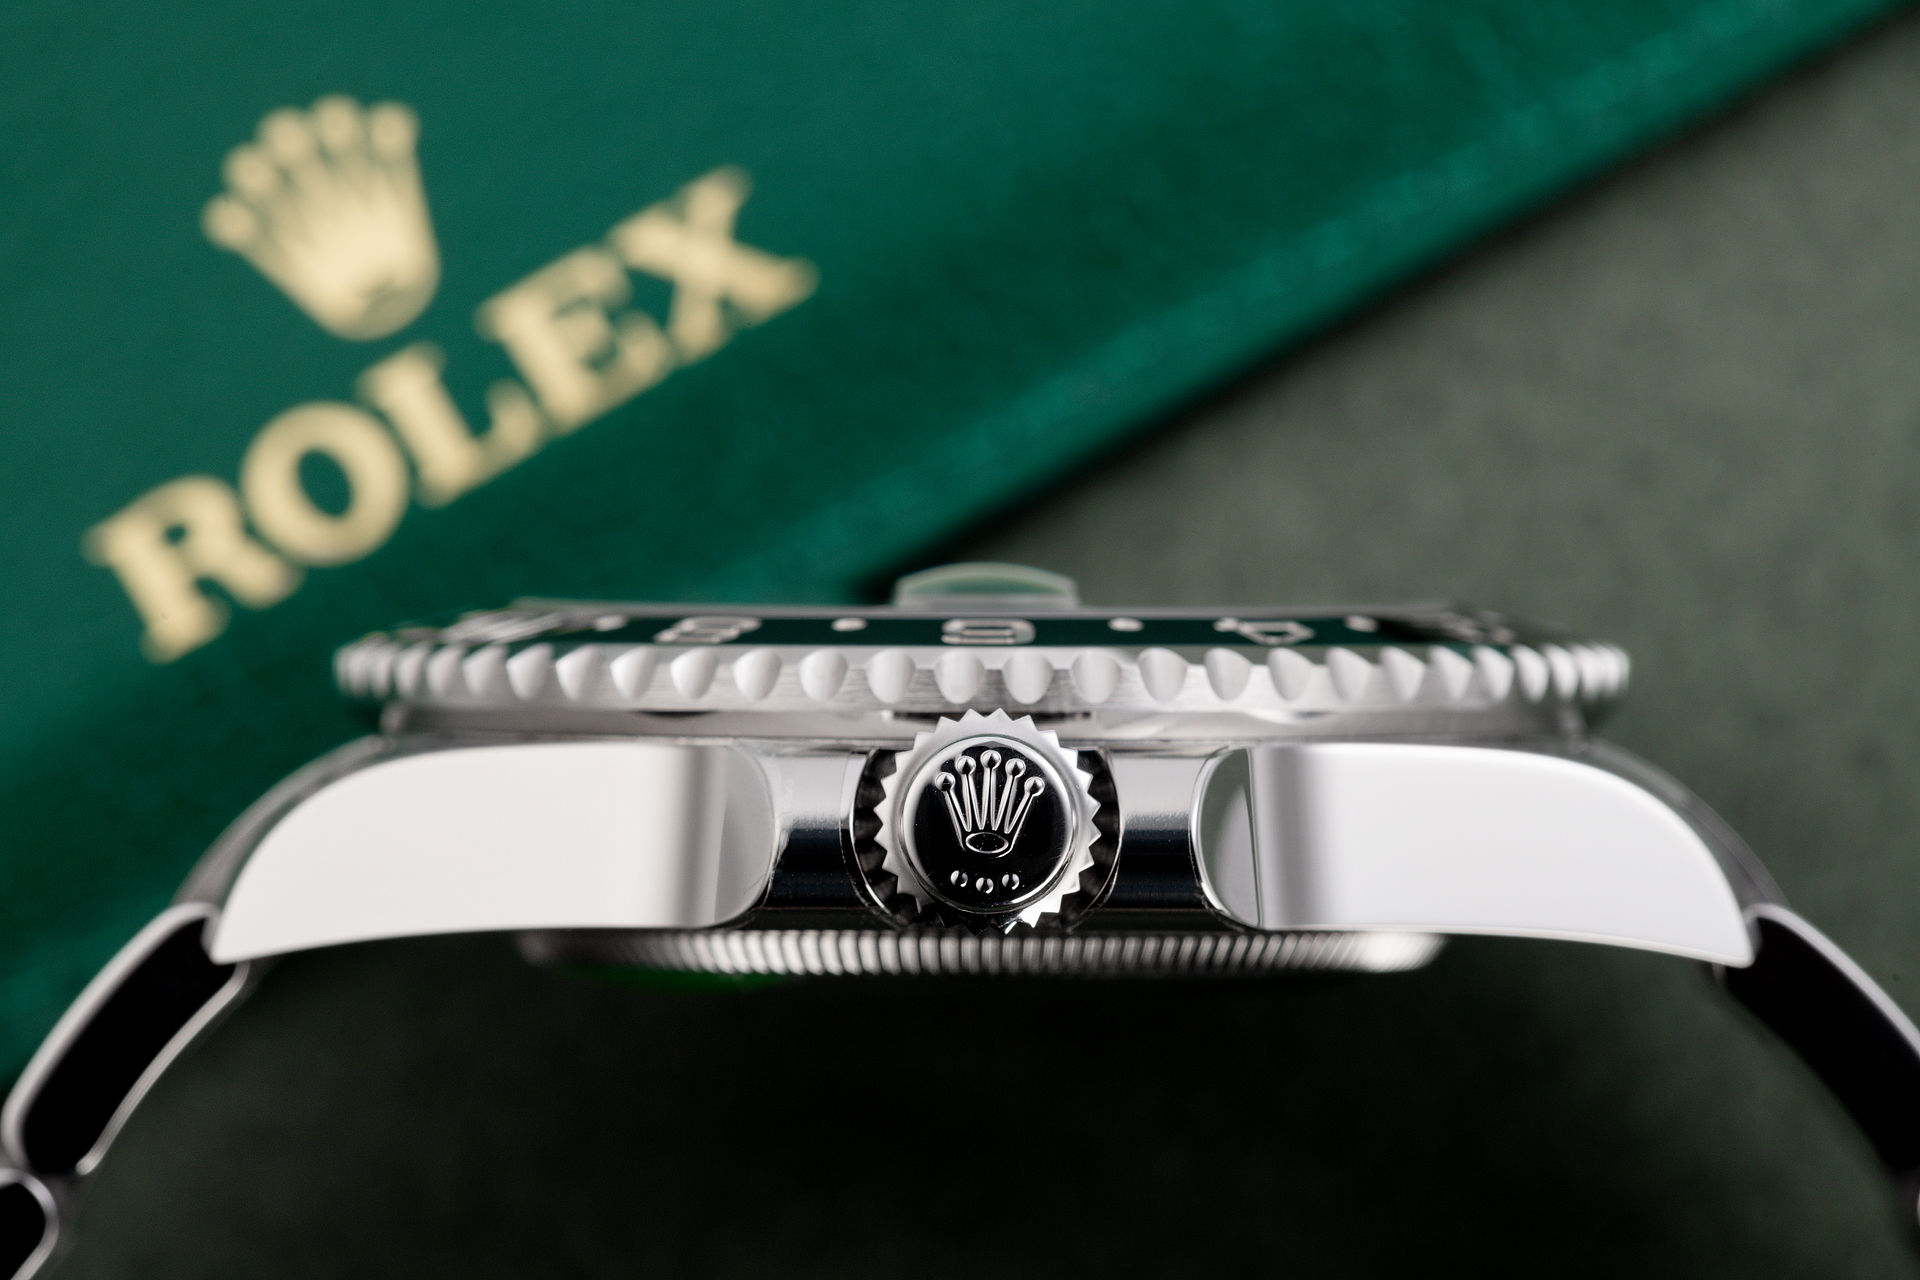 ref 116710LN | 'Brand New' | Rolex GMT-Master II